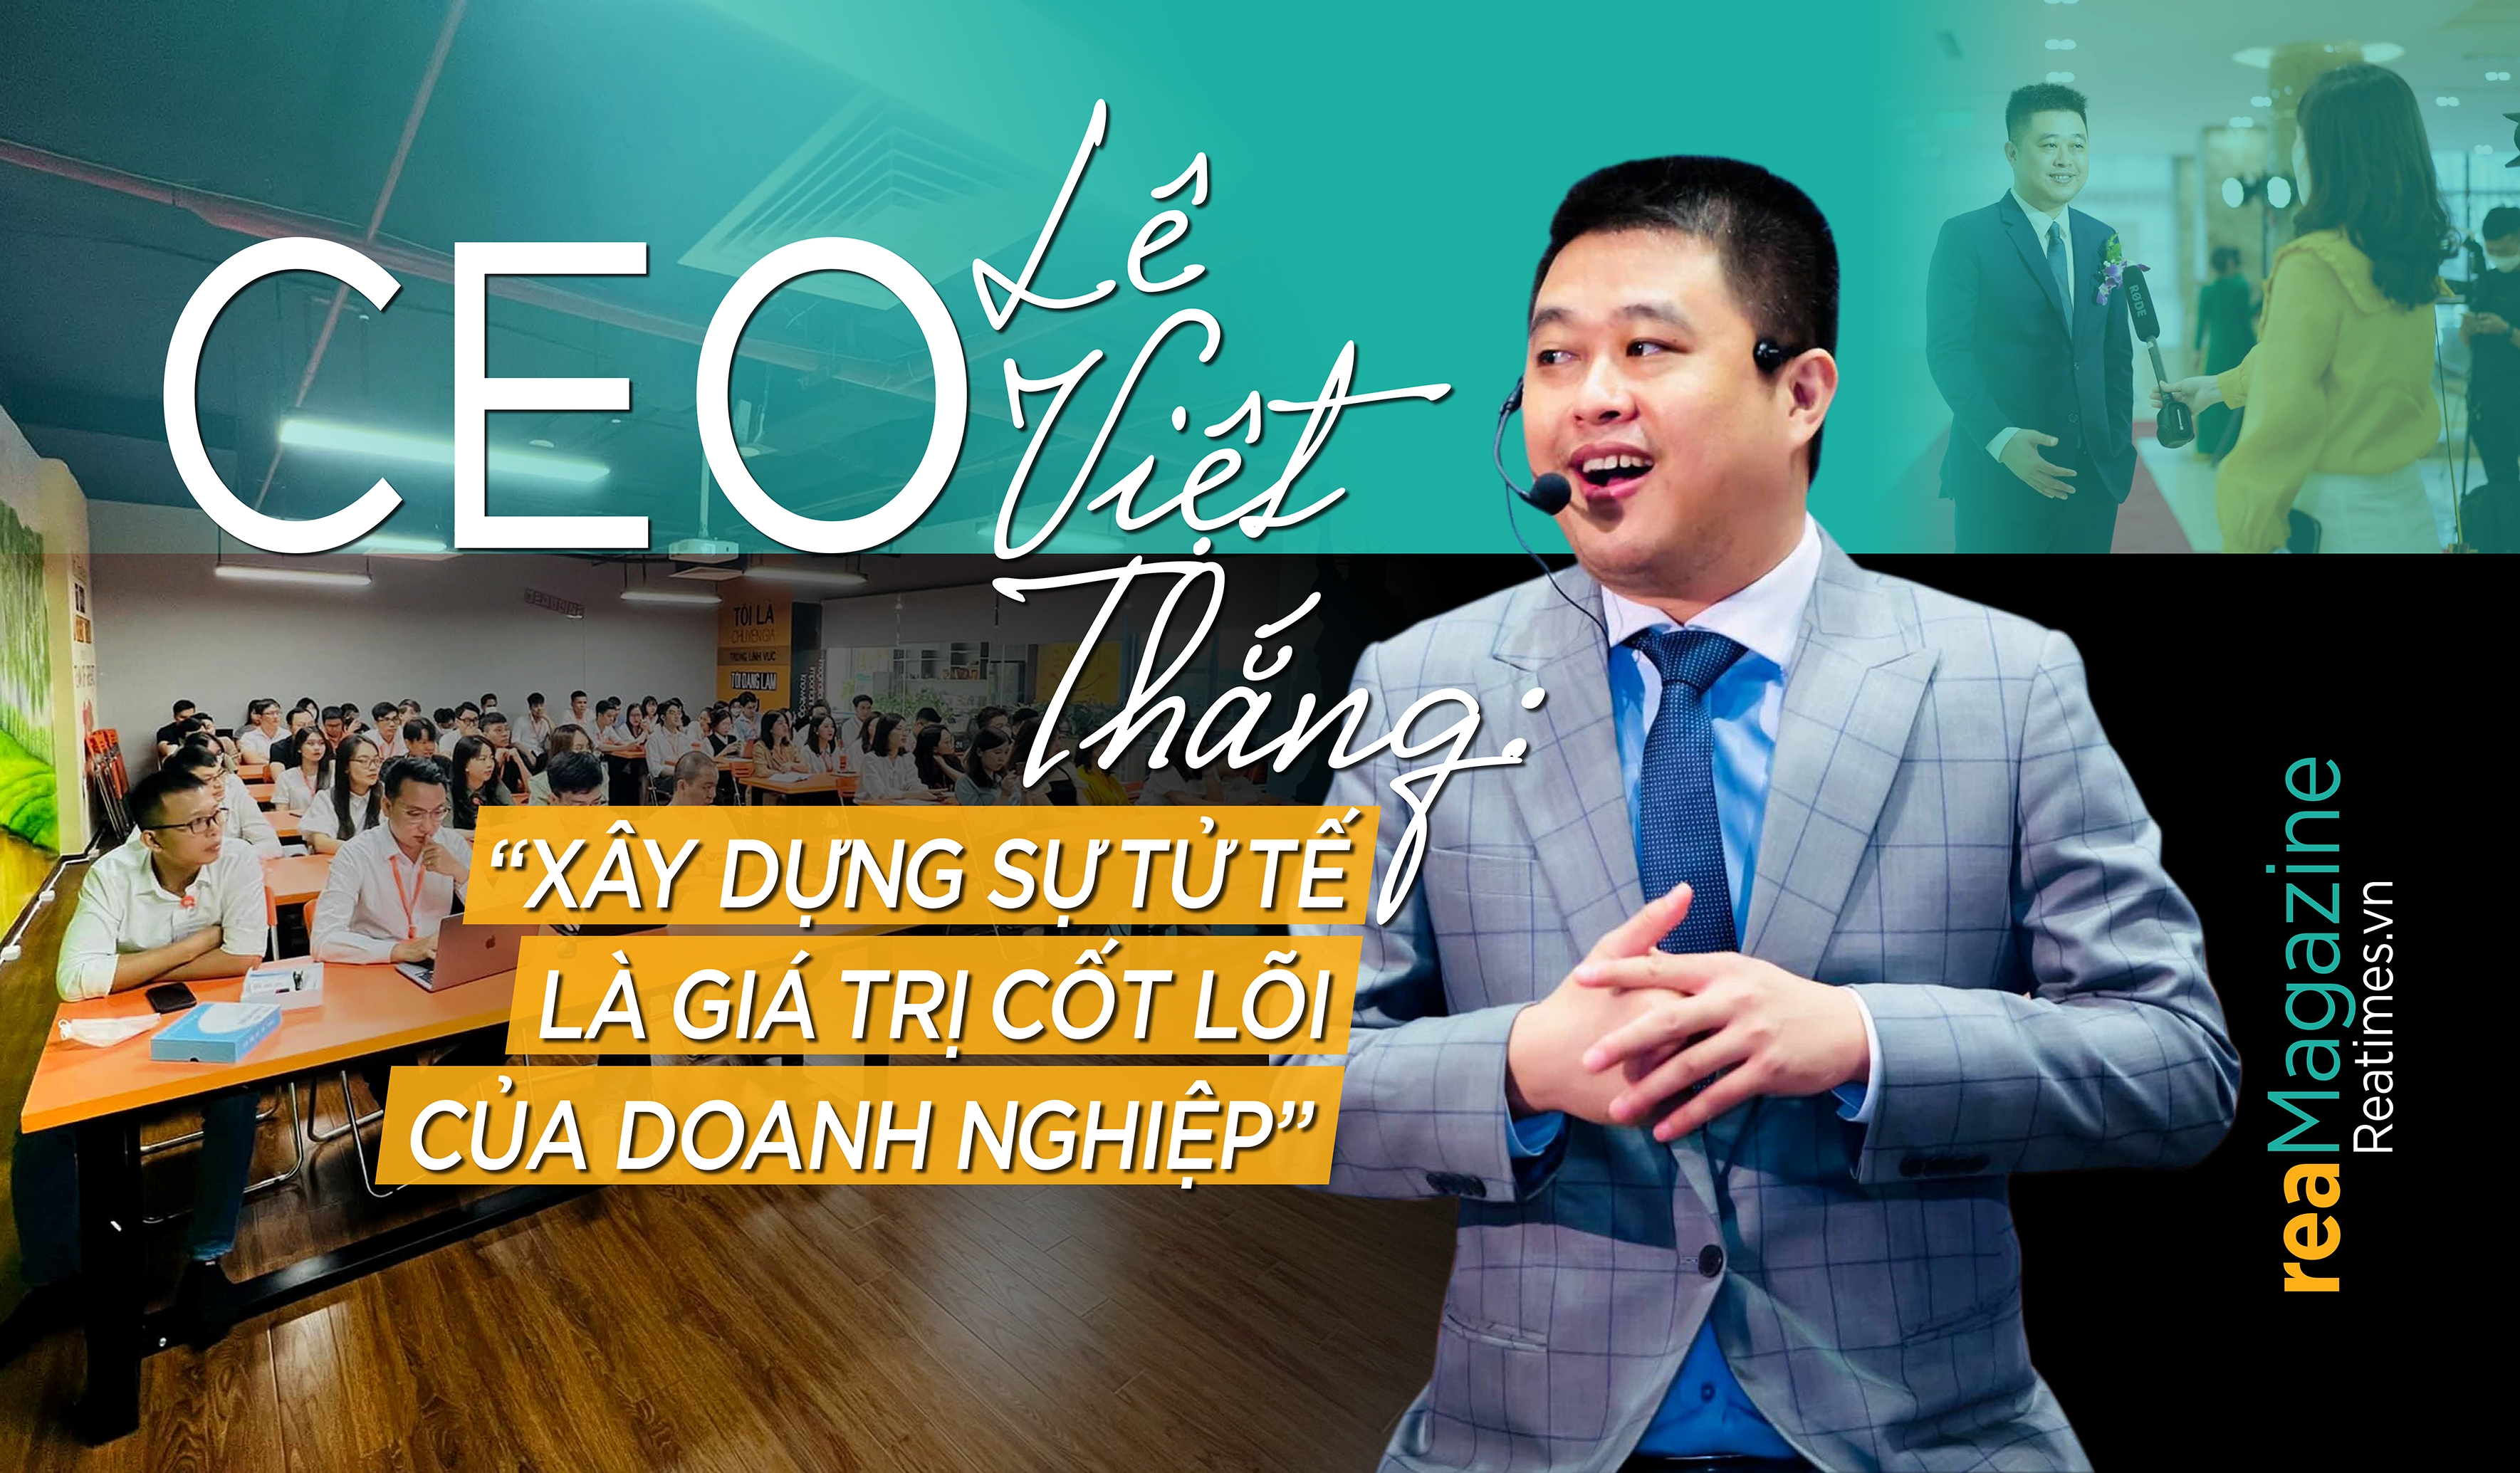 CEO Lê Việt Thắng: “Xây dựng sự tử tế là giá trị cốt lõi của doanh nghiệp”